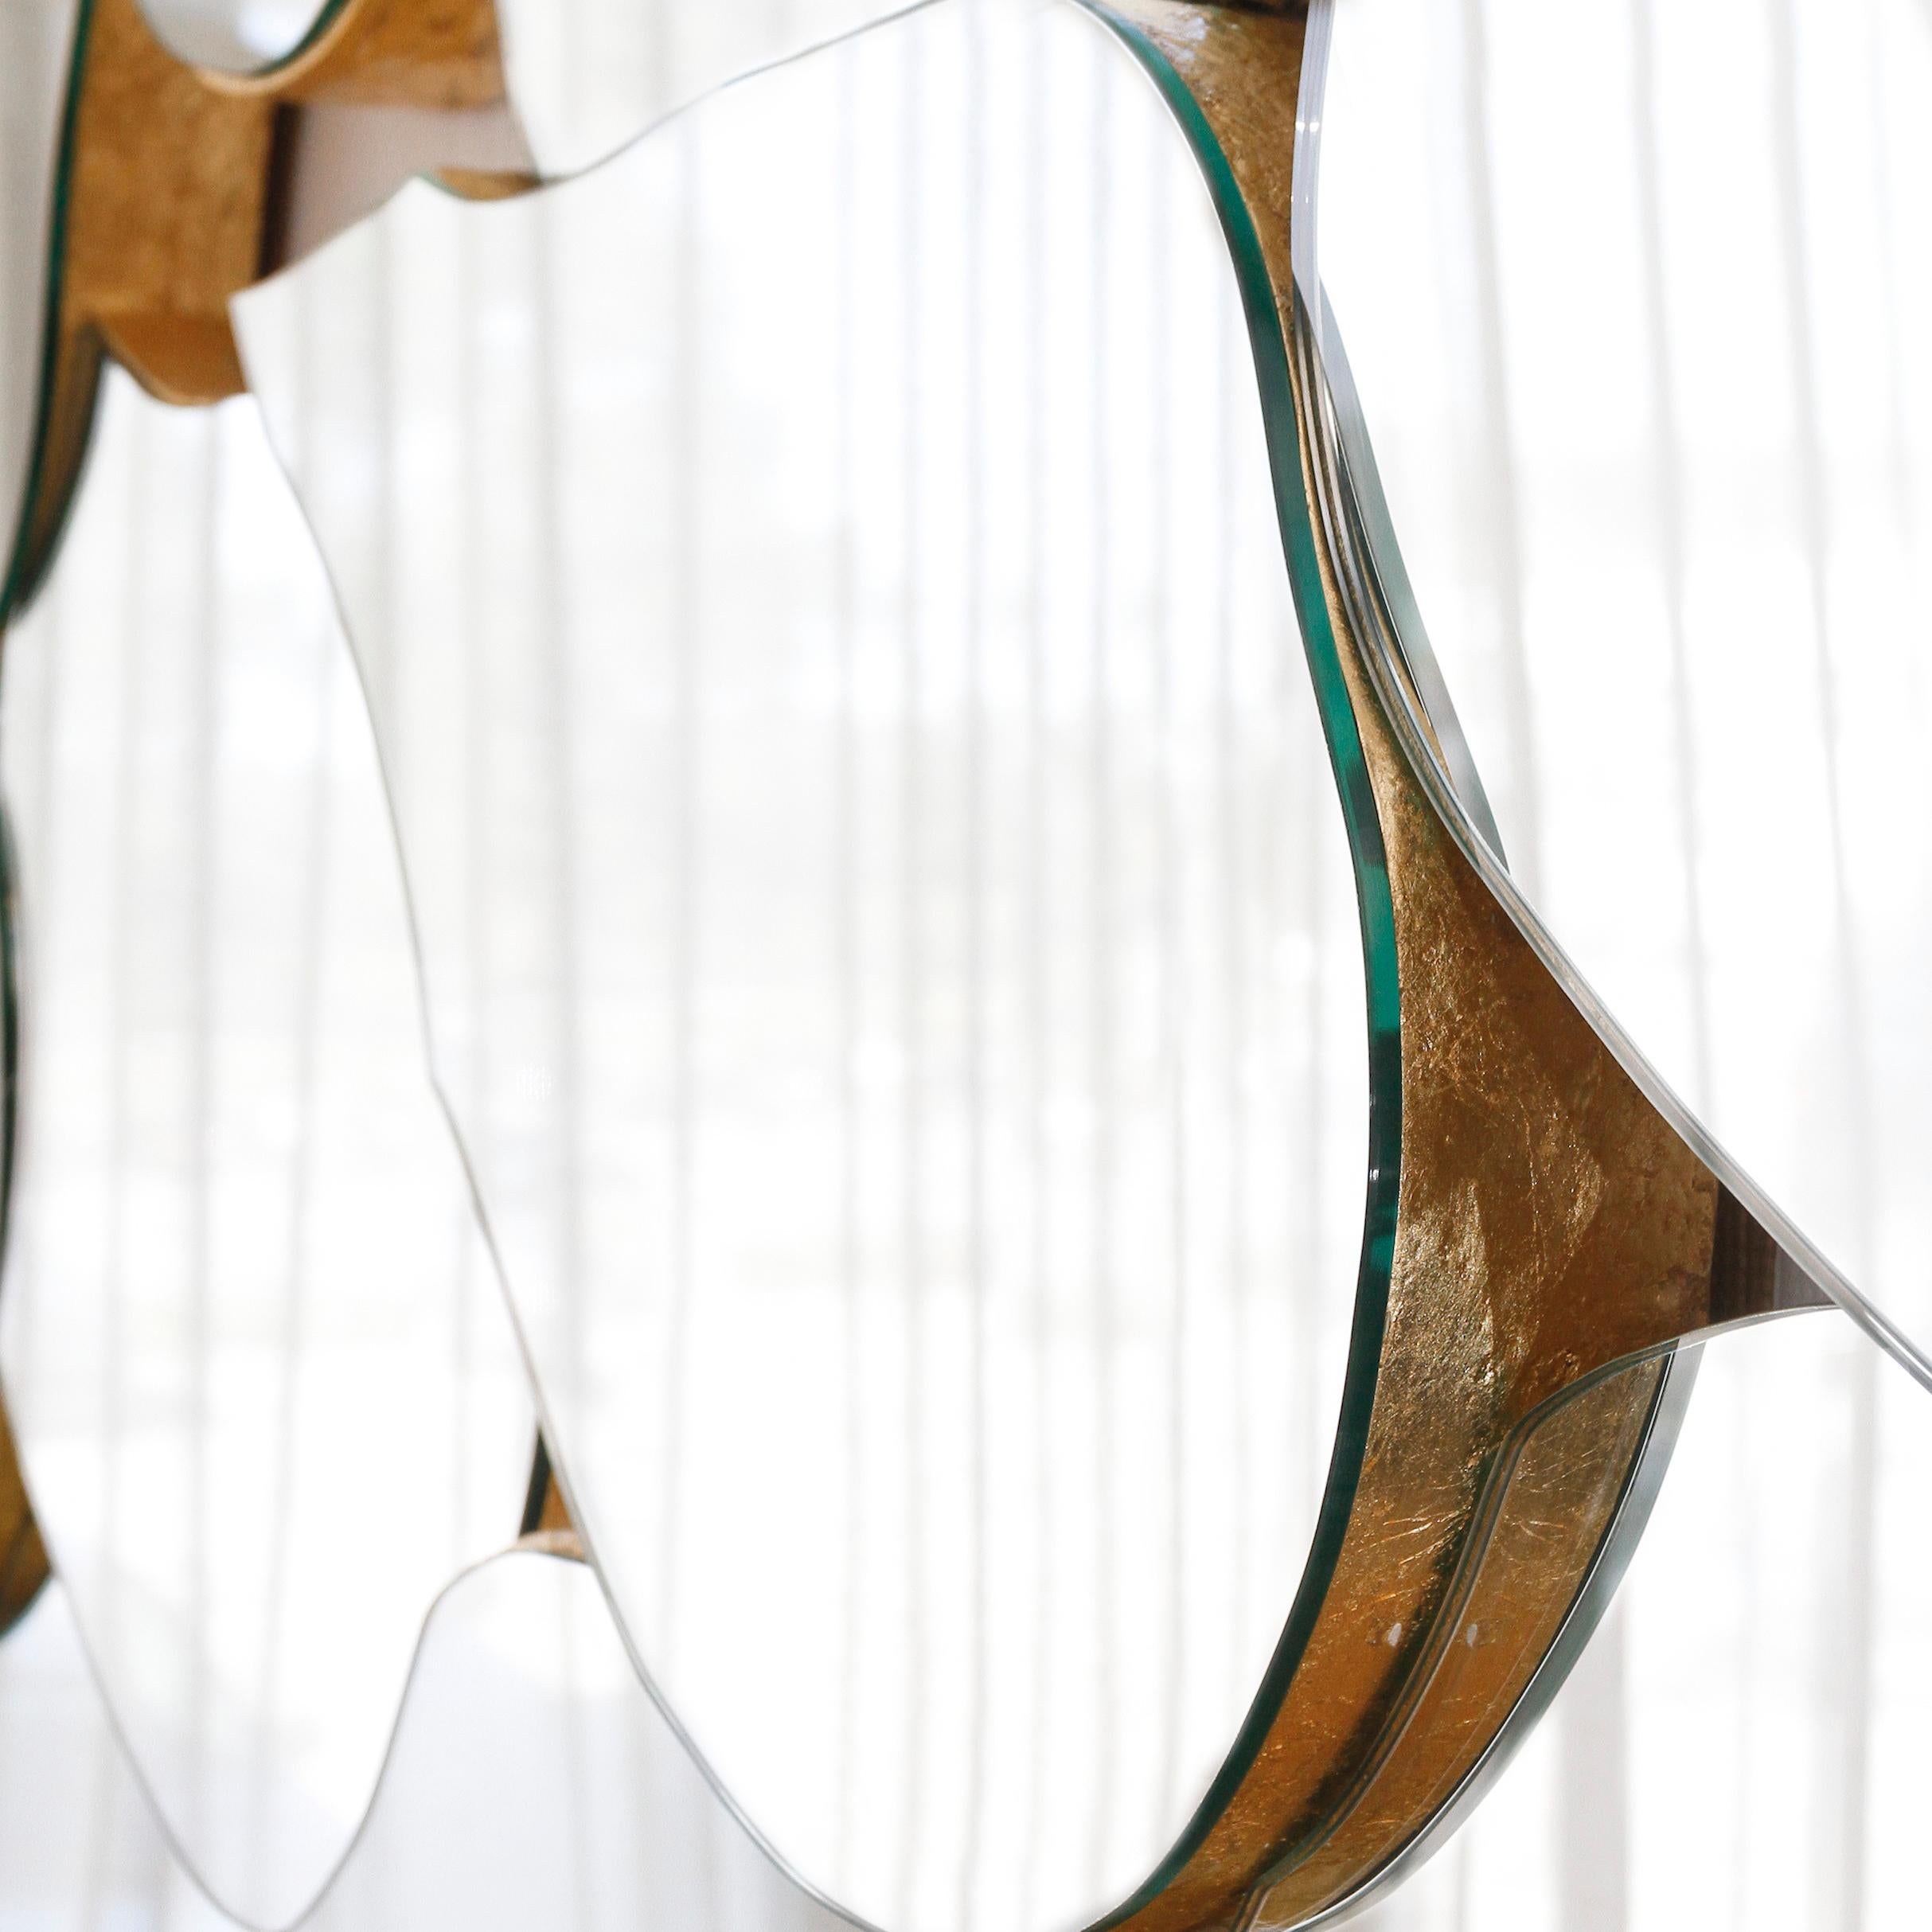 Infinity Spiegel, Modern Collection, handgefertigt in Portugal - Europa von GF Modern.

Der Infinity-Wandspiegel reflektiert den Lauf der Zeit in einem unendlichen Blick und fesselt die Aufmerksamkeit bei jeder Begegnung. Mit seinem blütenförmigen